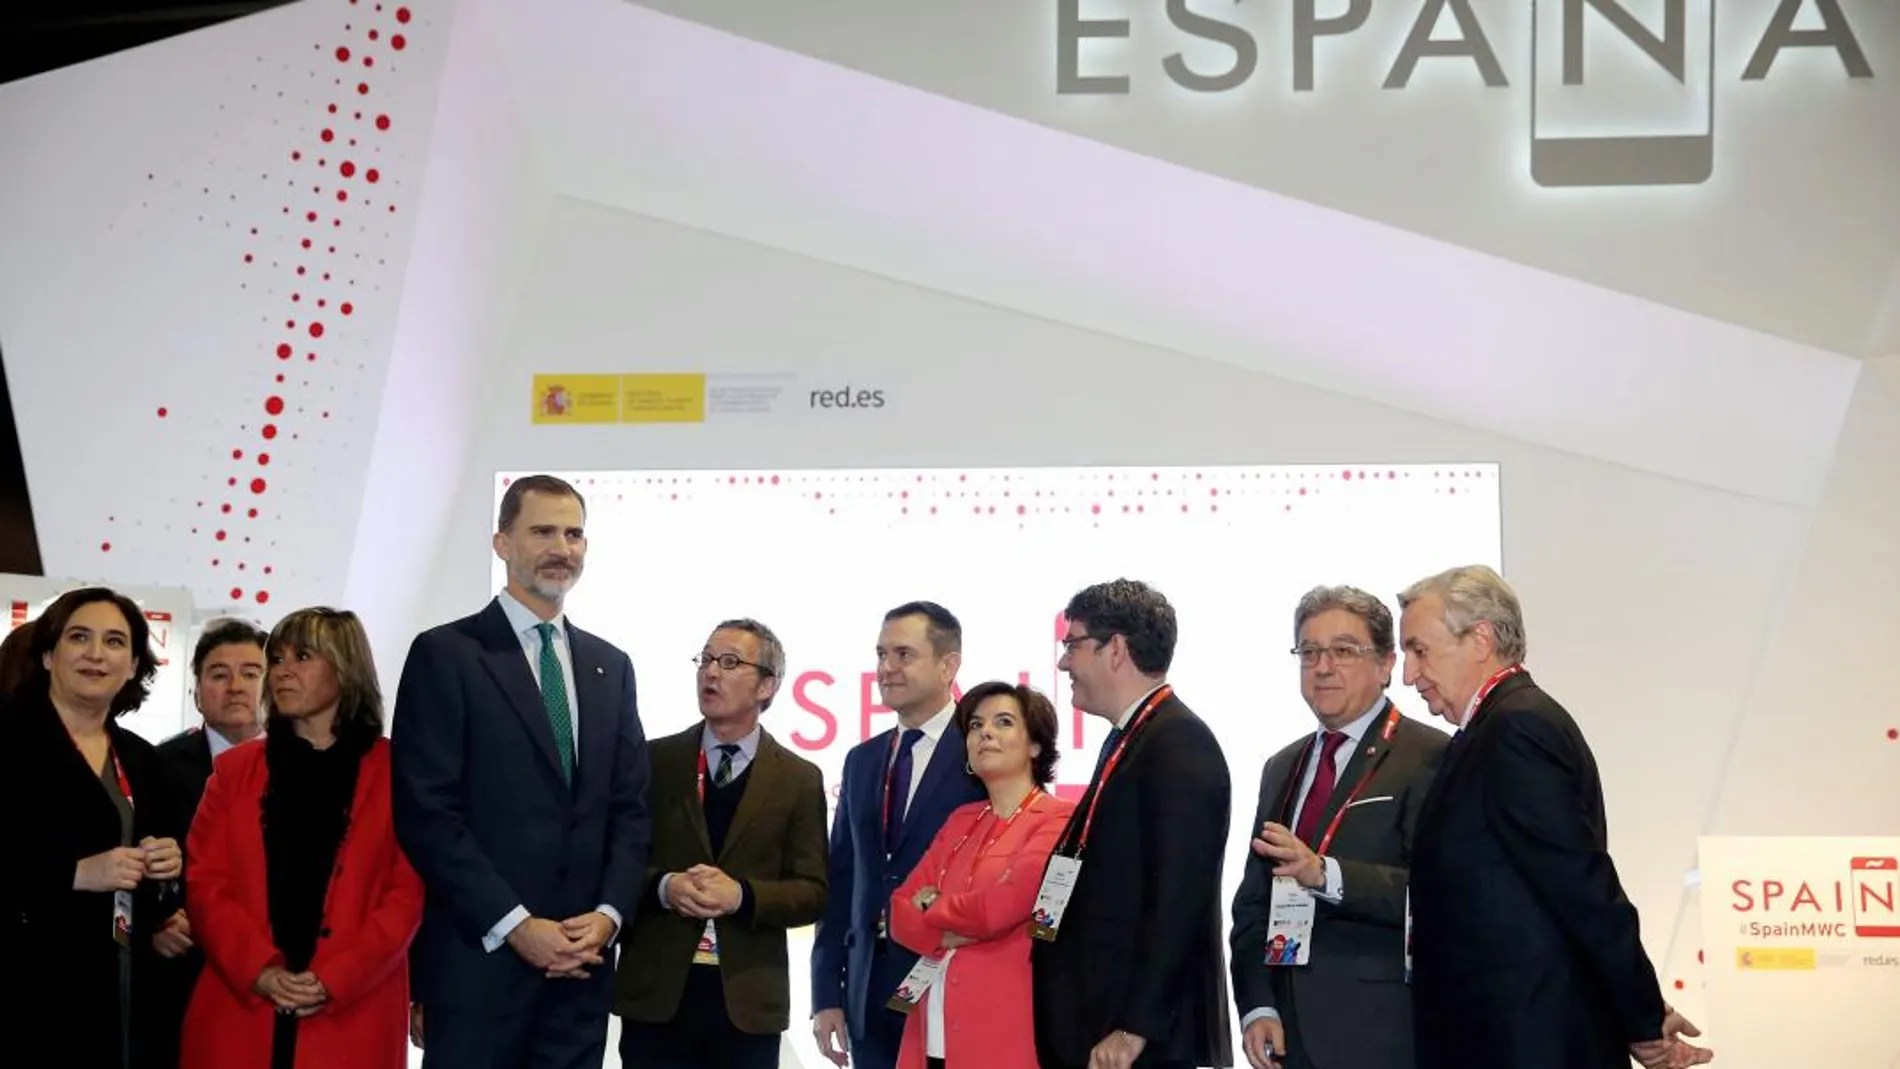 El Rey Felipe VI en el pabellón de España durante la inauguración del MWC (Mobile World Congress)/Efe